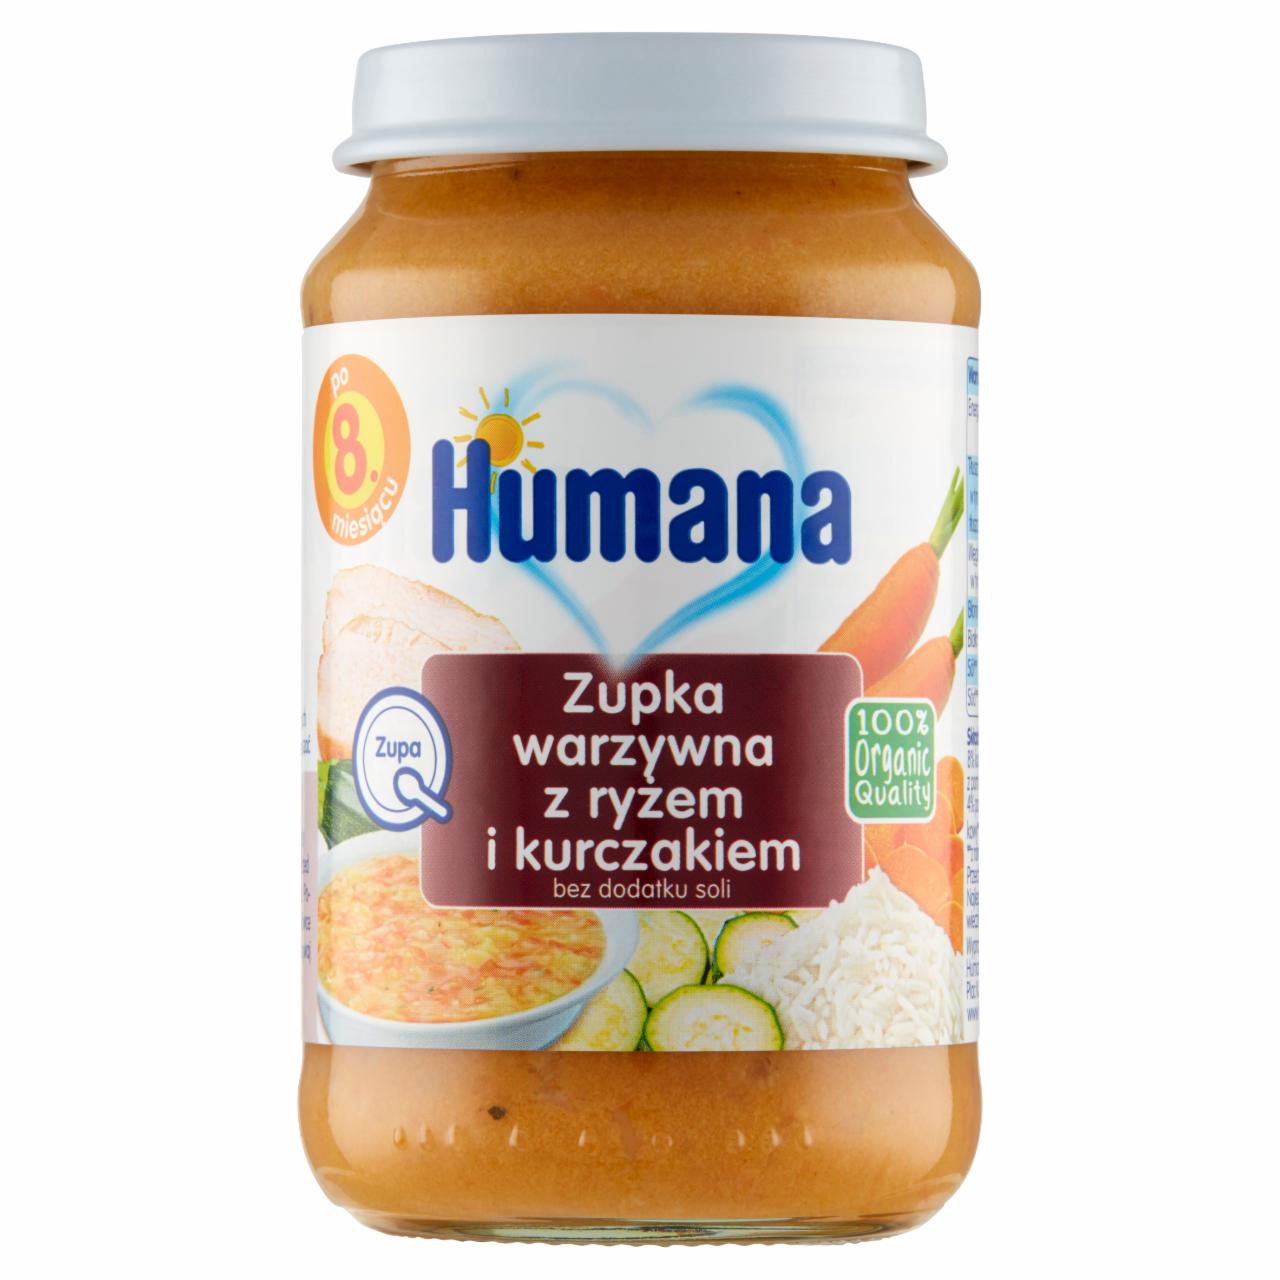 Zdjęcia - Humana 100% Organic Zupka warzywna z ryżem i kurczakiem po 8. miesiącu 190 g